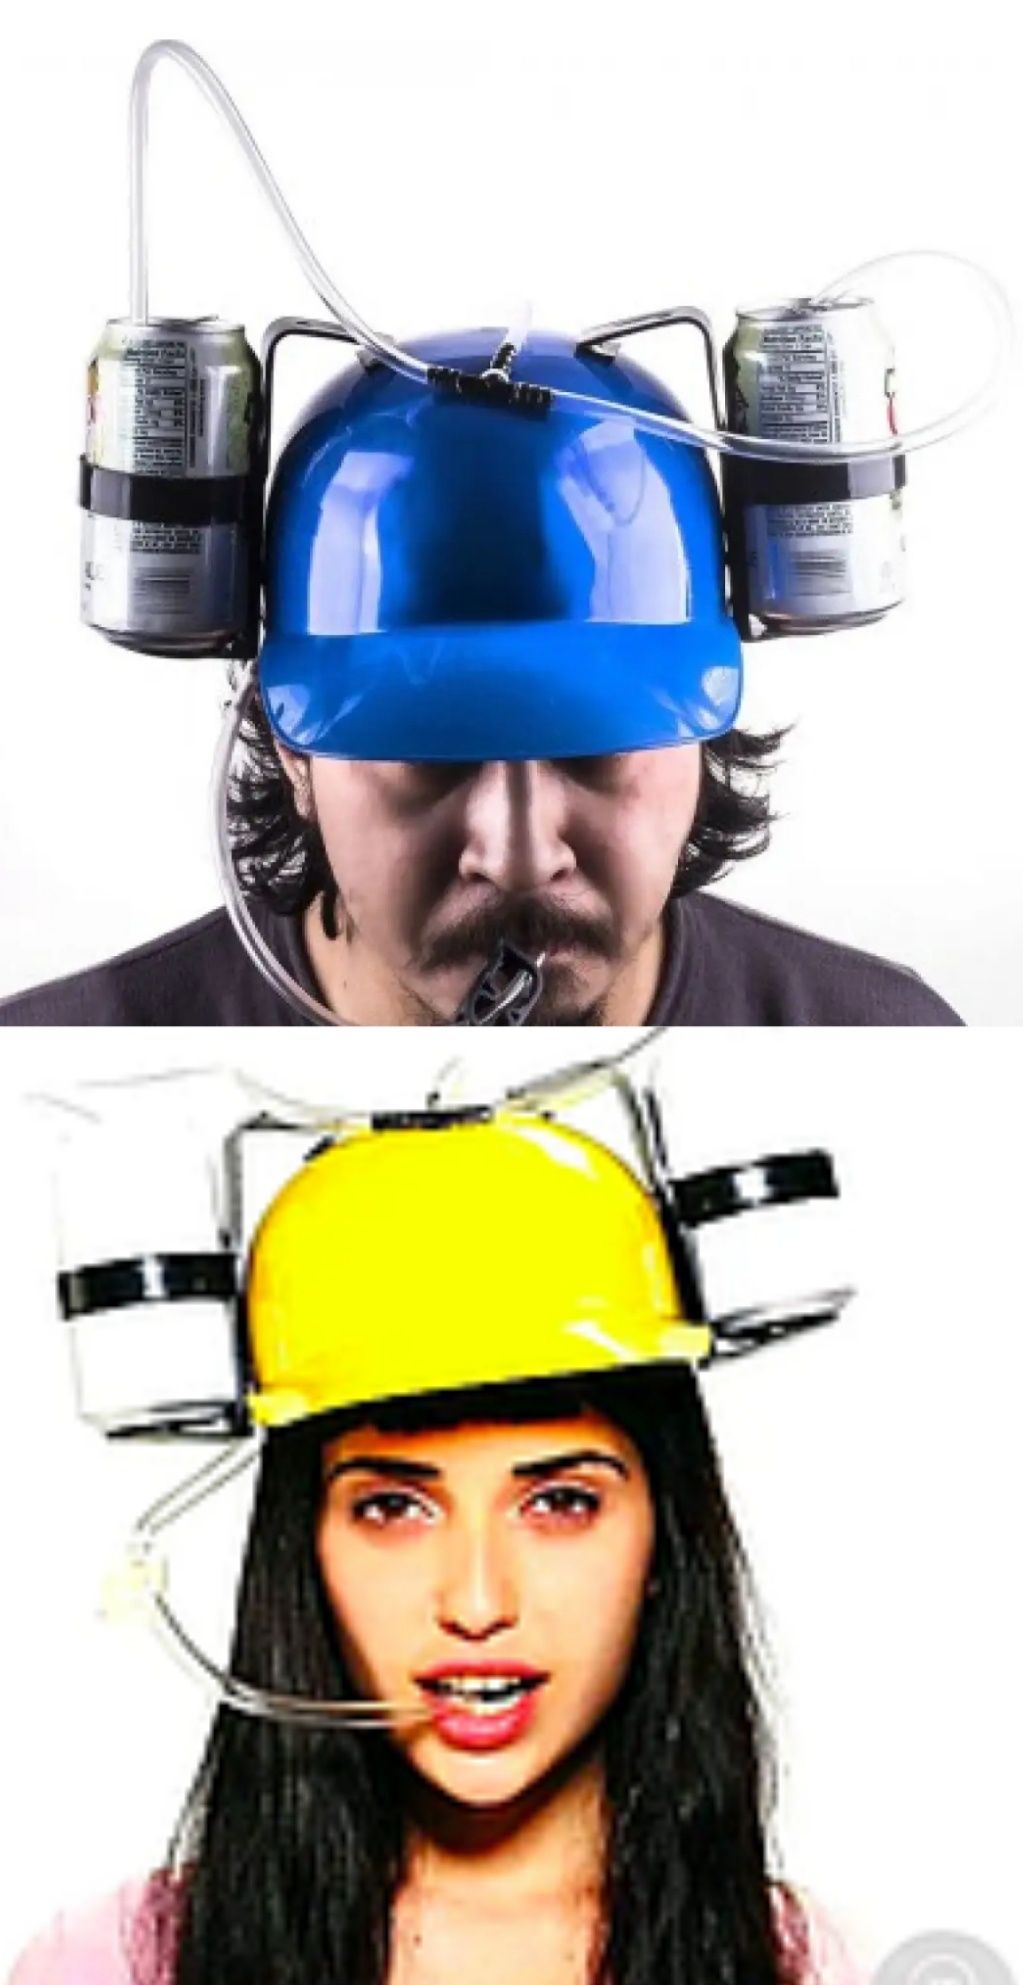 Шлем для пива 2 штуки Синий+Желтый Пивной шлем Пивная каска